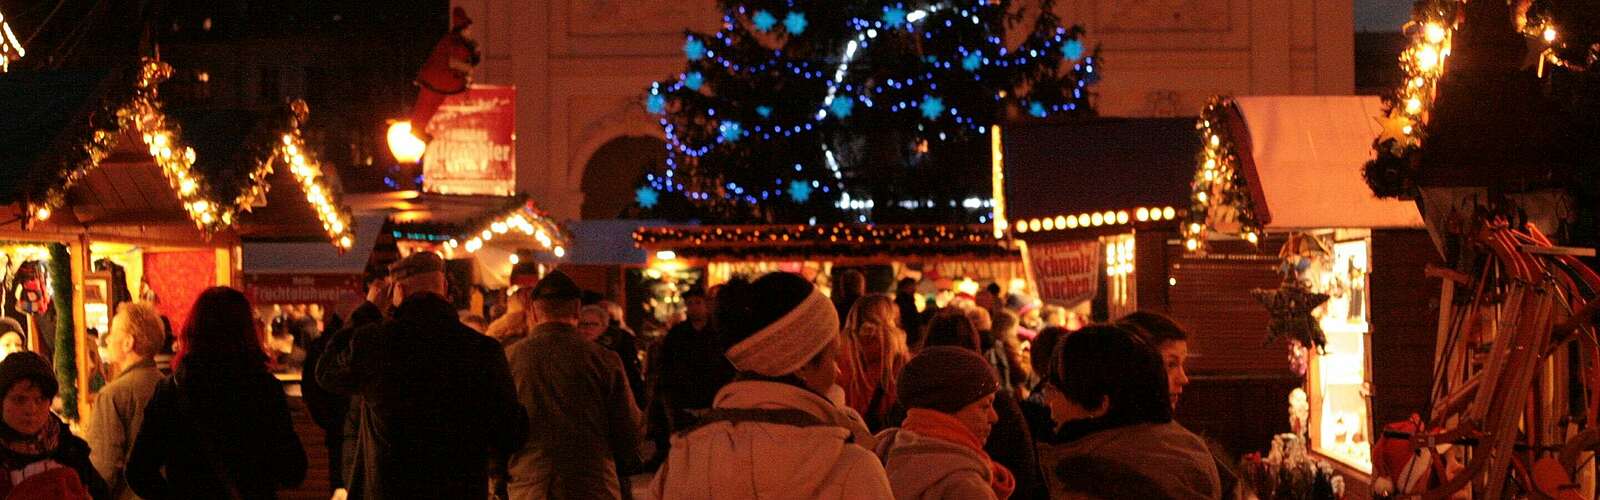 Blauer Lichterglanz - Weihnachtsmarkt in Potsdam,
        
    

        Foto: TMB-Fotoarchiv/Steffen Lehmann